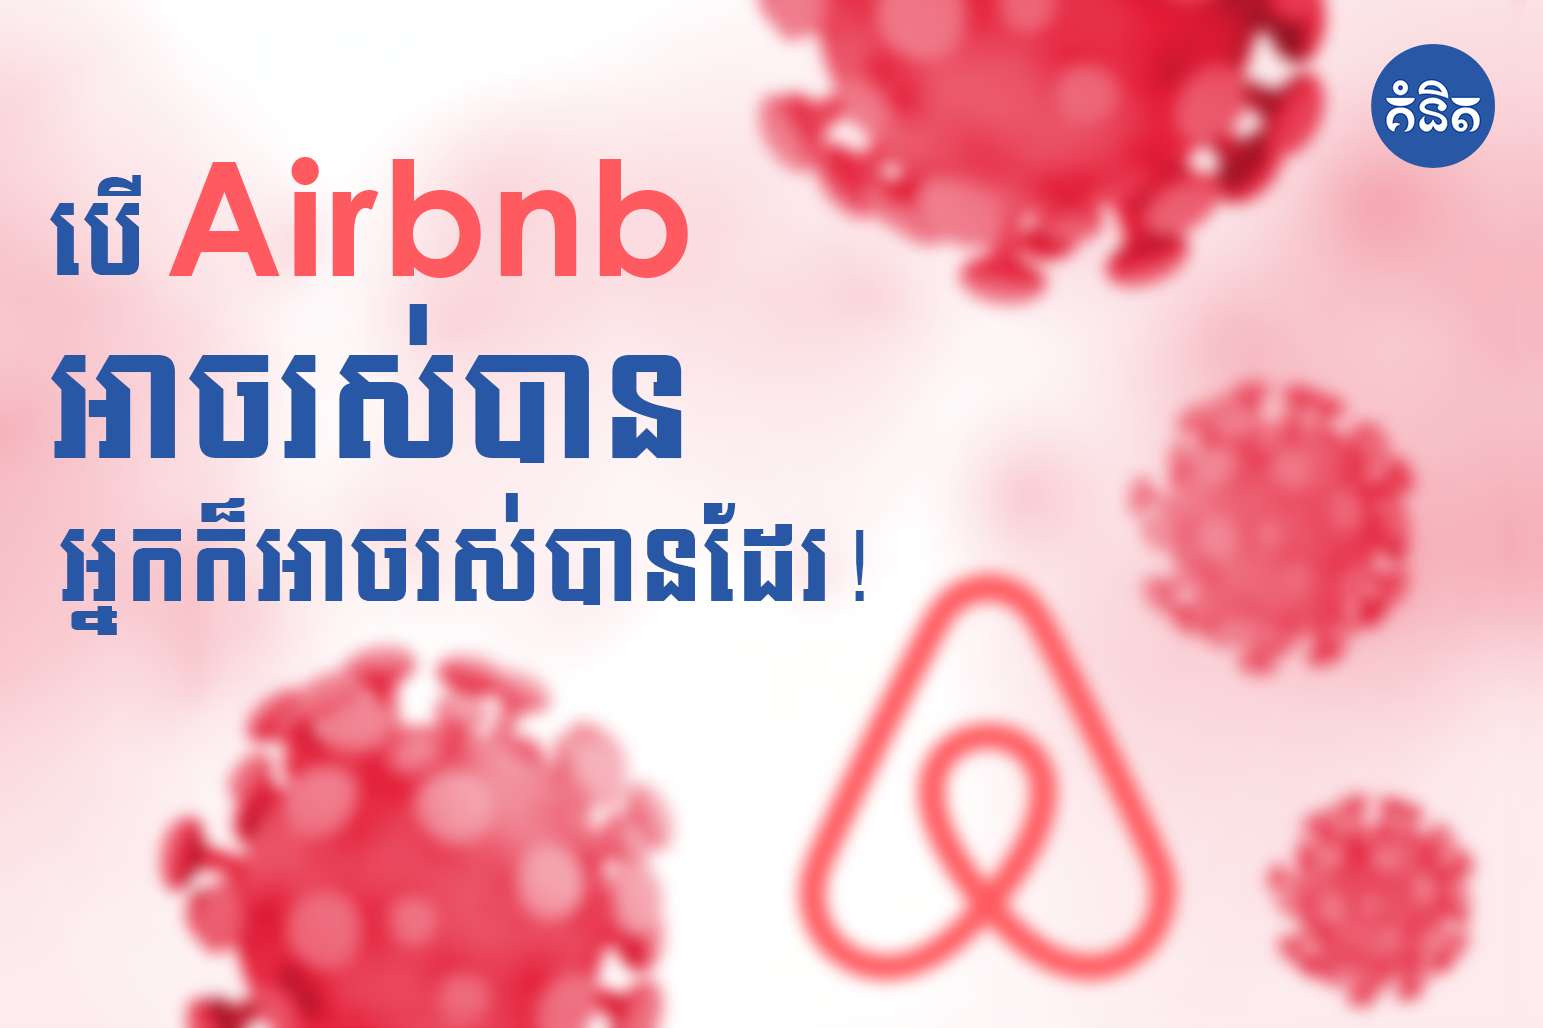 បើ Airbnb អាចរស់បាន! អ្នកក៏អាចធ្វើបានដូចគ្នា !